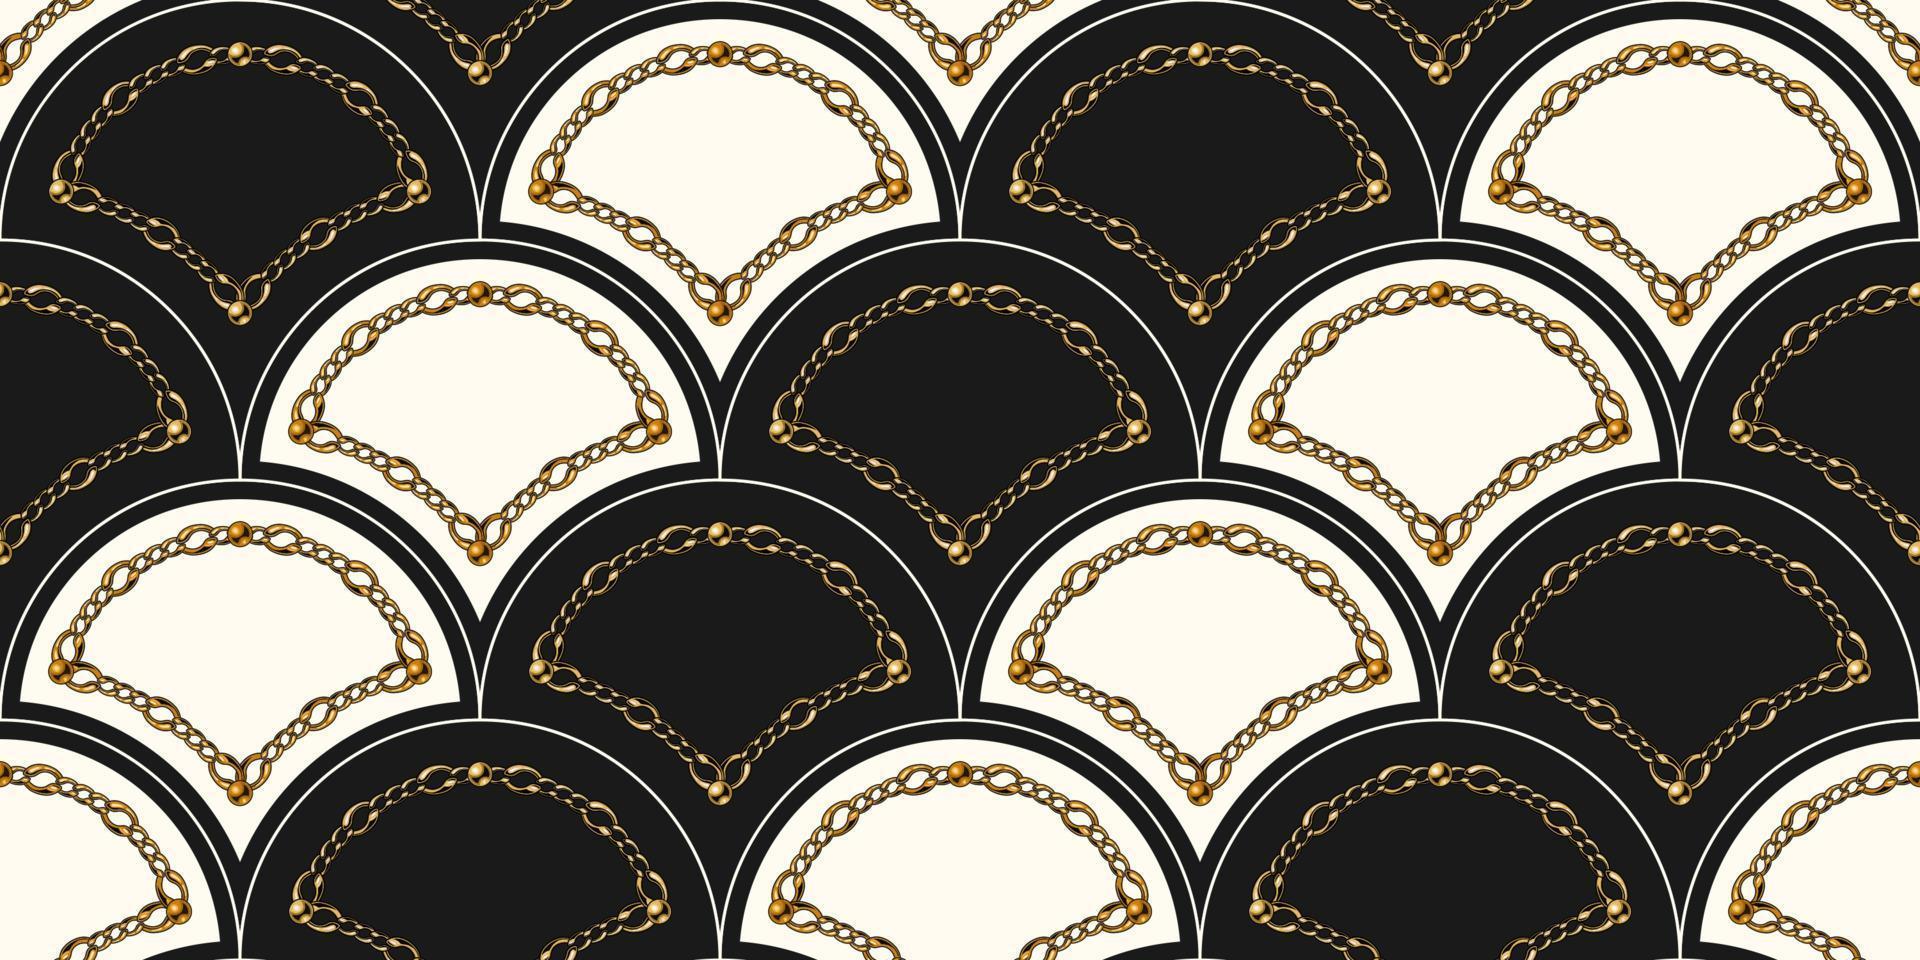 rejilla en forma de concha de patrones sin fisuras con cadena de oro y cuentas sobre fondo negro. ilustración de moda patrón art déco sin costuras. vector